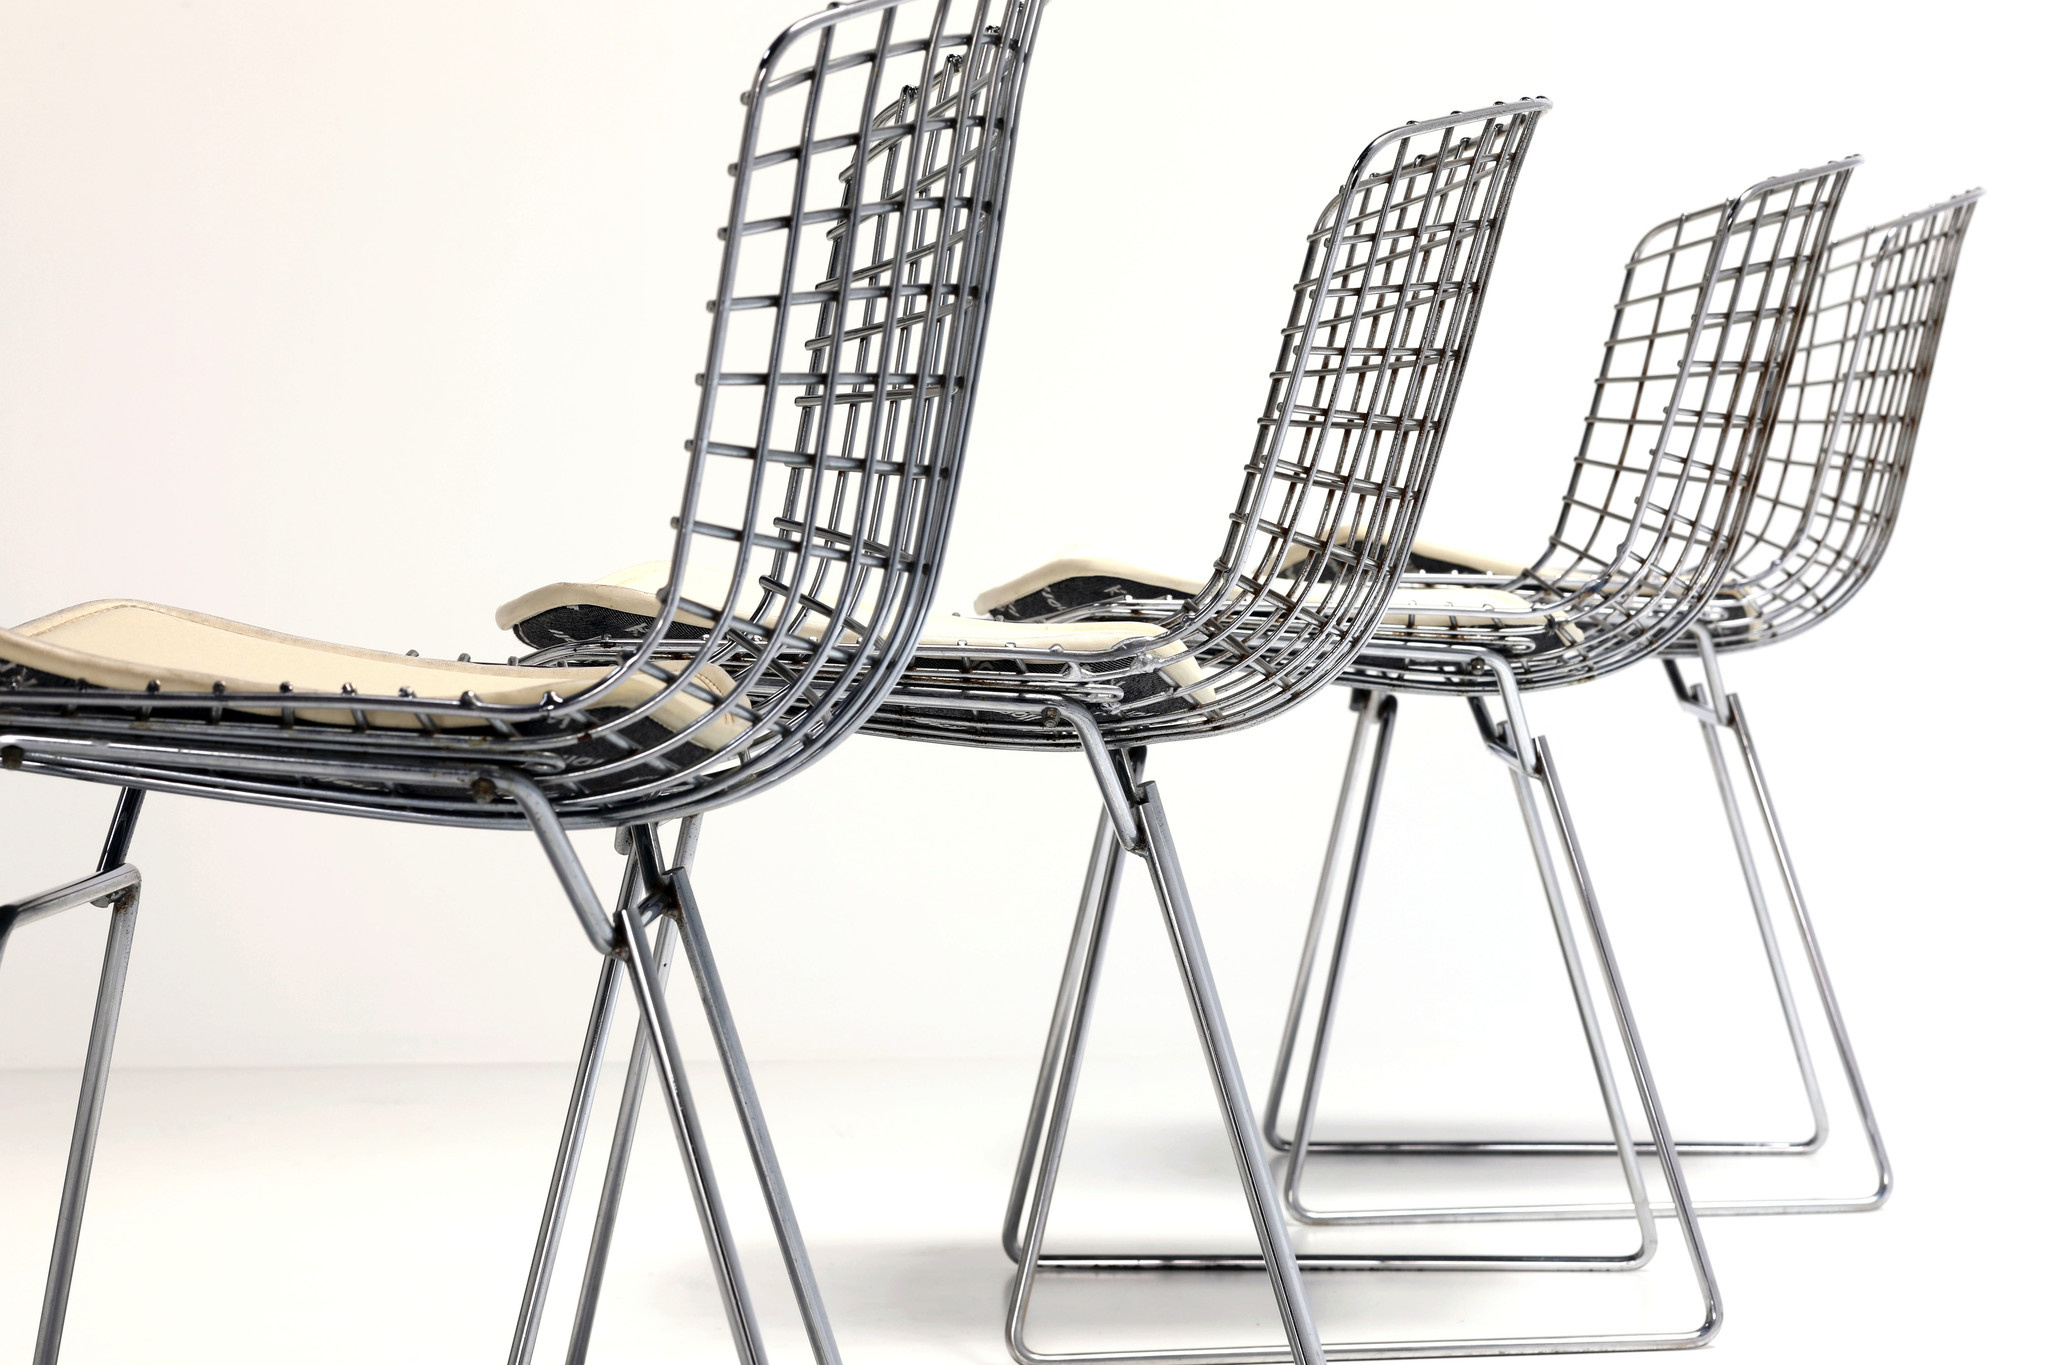 4 Bertoia chairs by Harry Bertoia for Knoll produced by De Coene Kortrijk